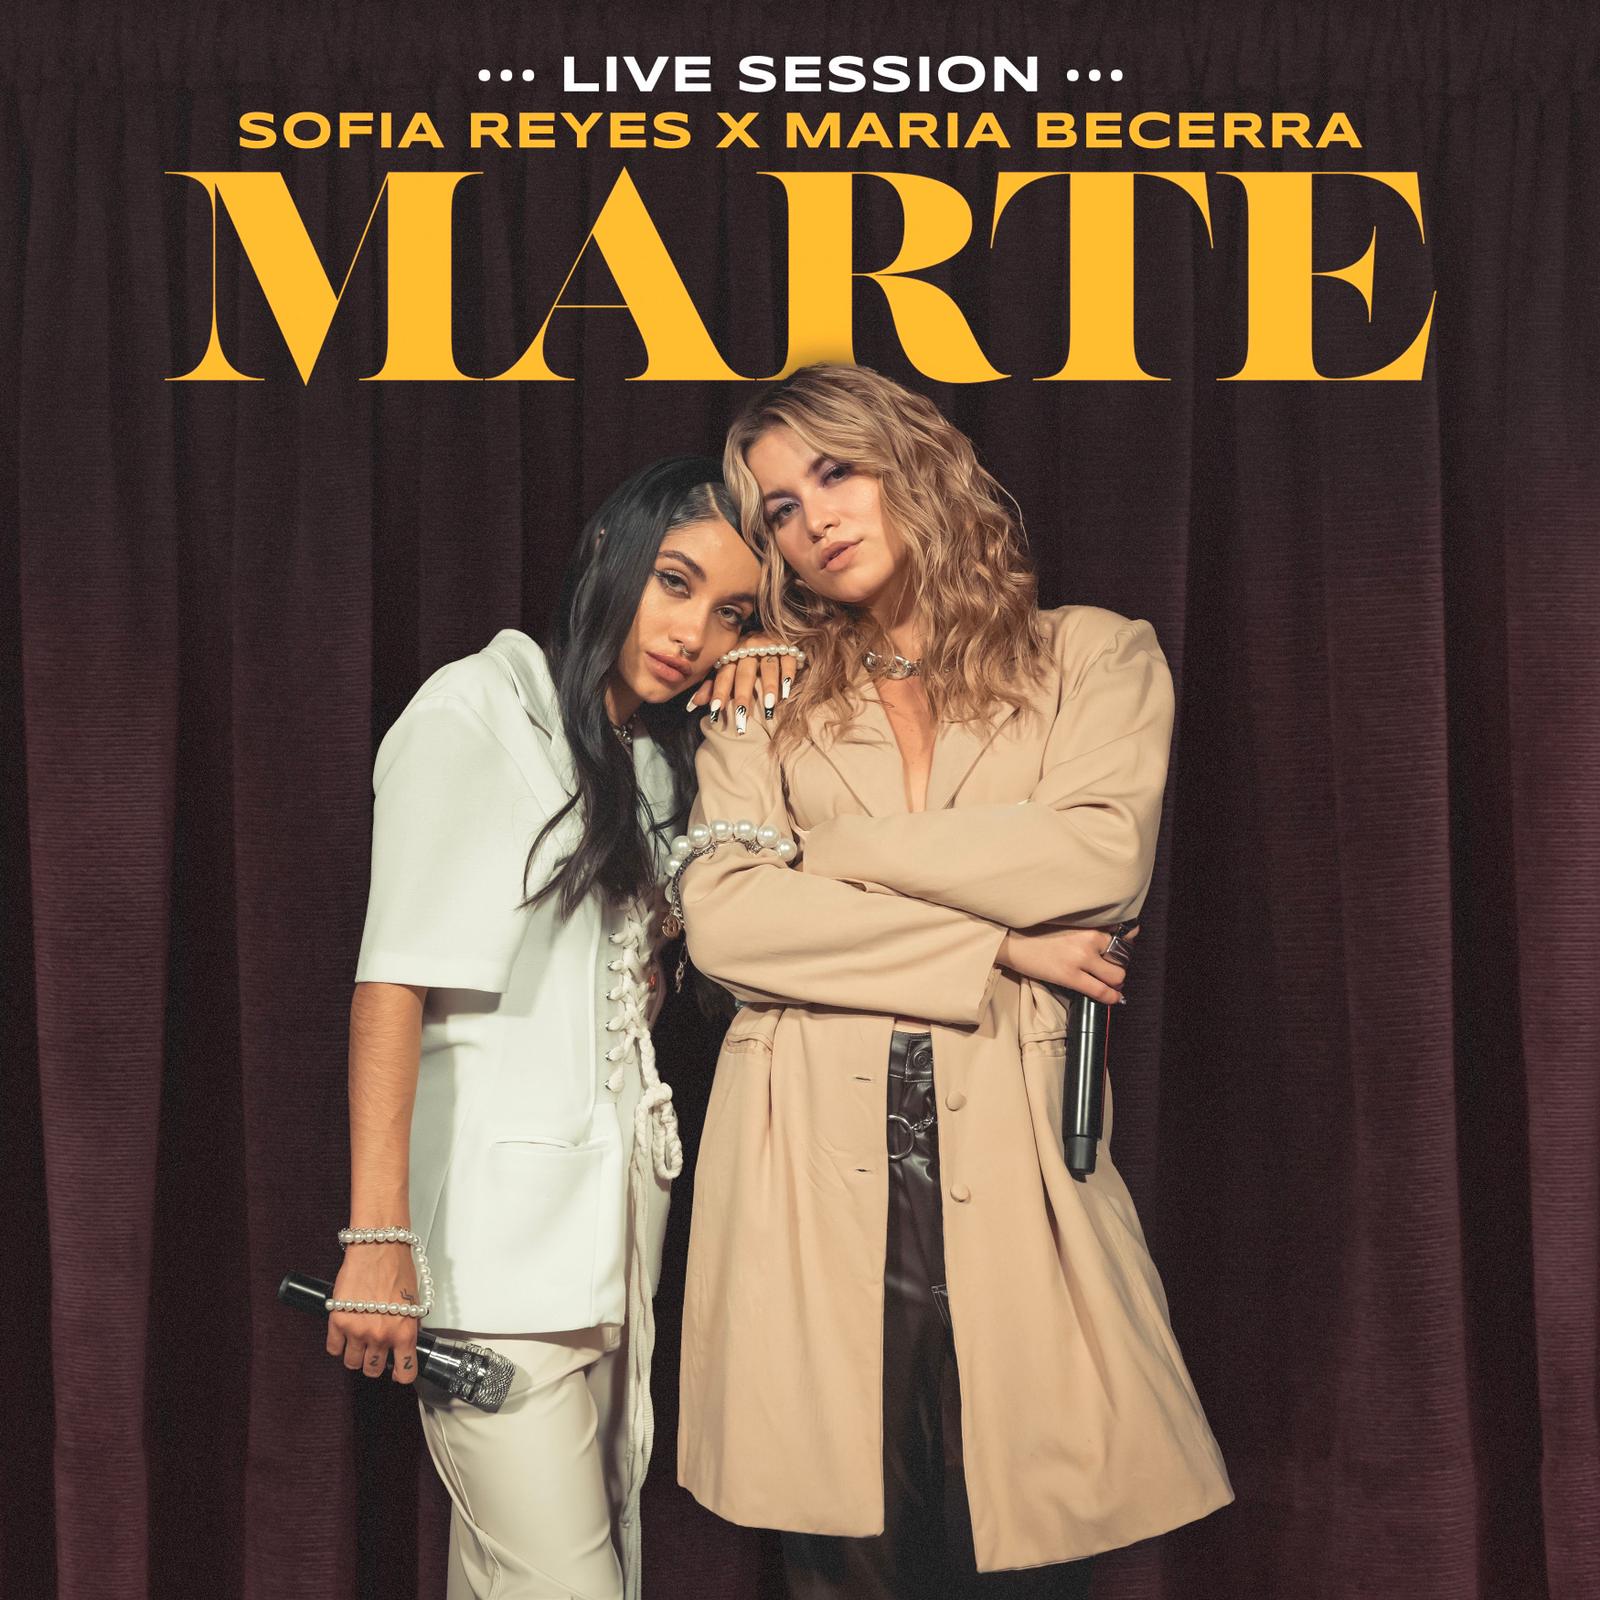 MARÍA BECERRA junto Sofía Reyes se unen en live session del hit musical “MARTE”